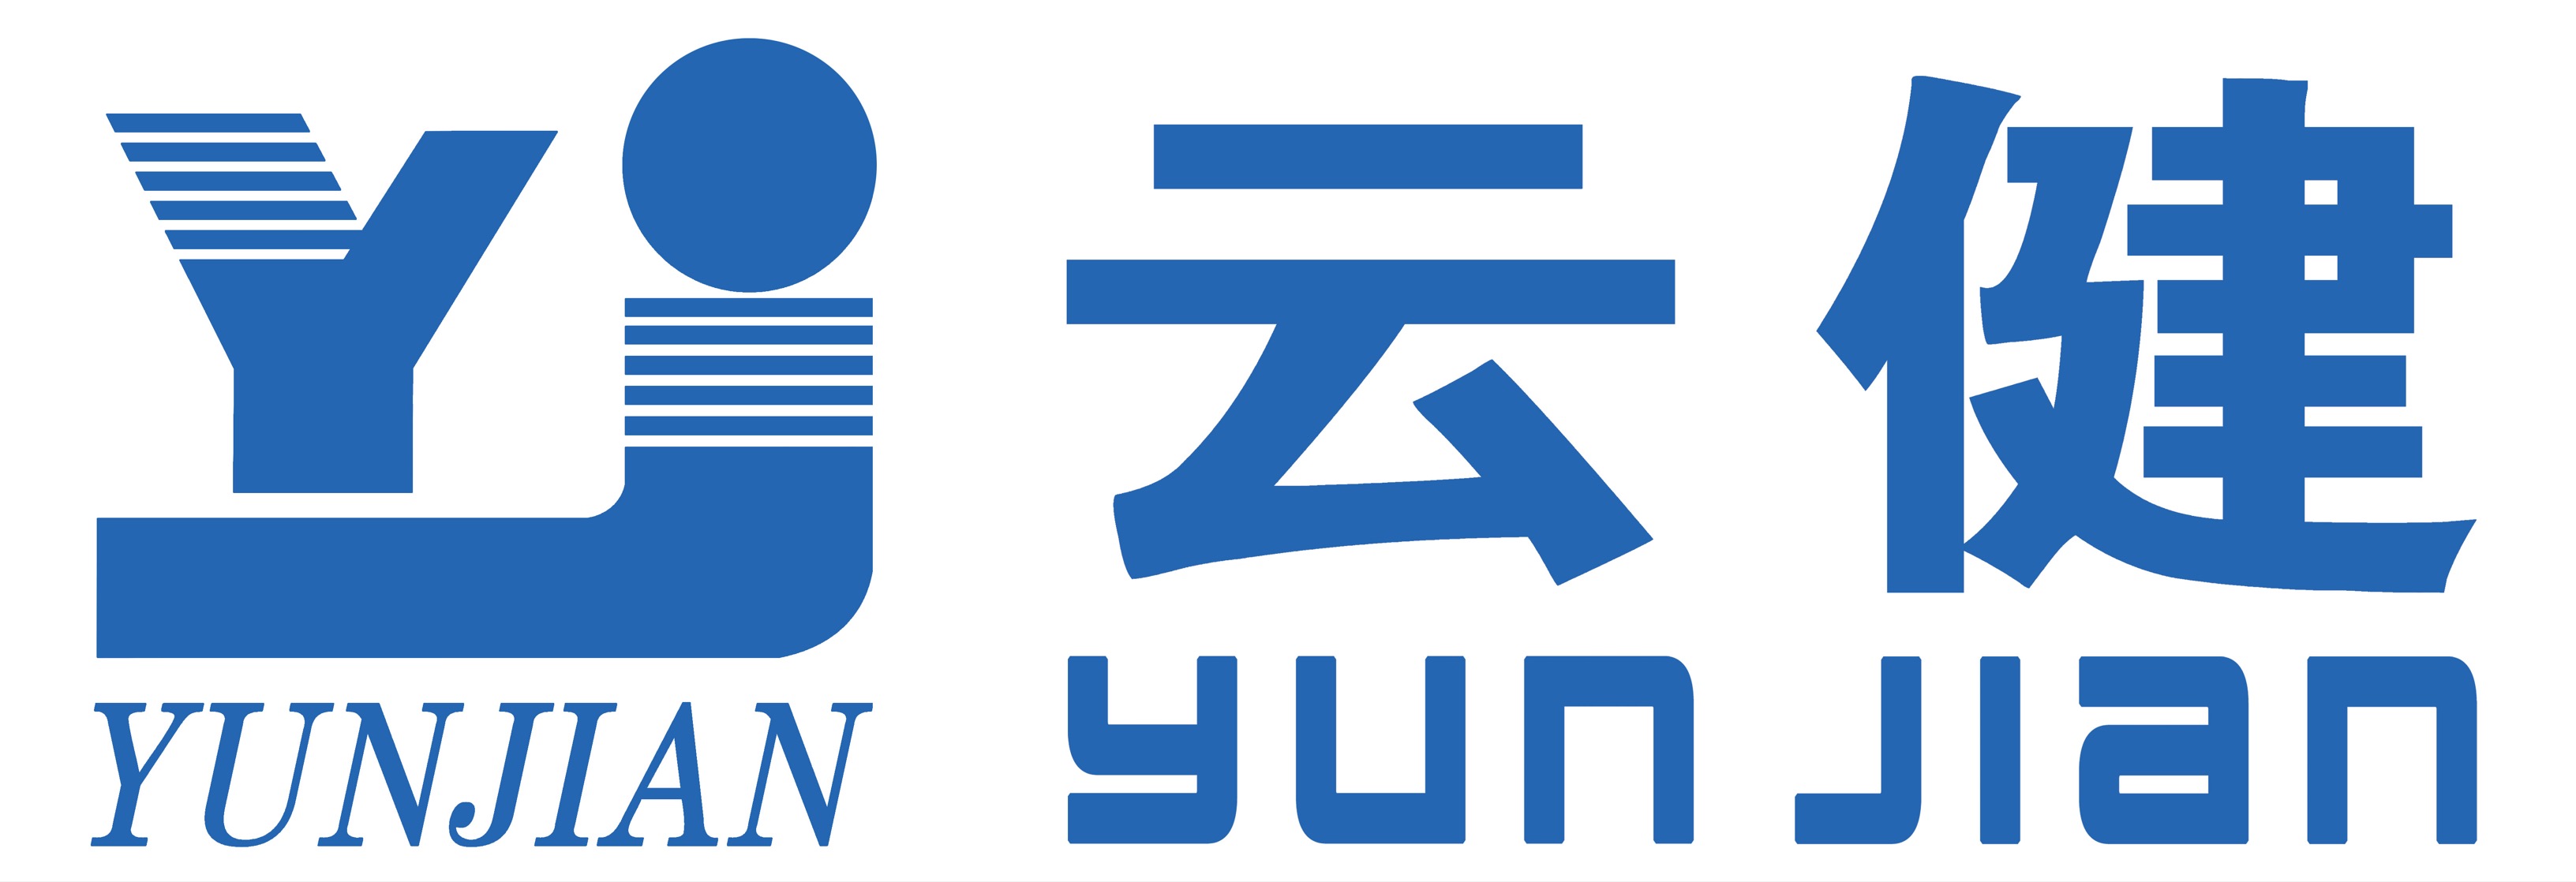 Yunnan Yunjian Sports Goods Co., Ltd.  Logo